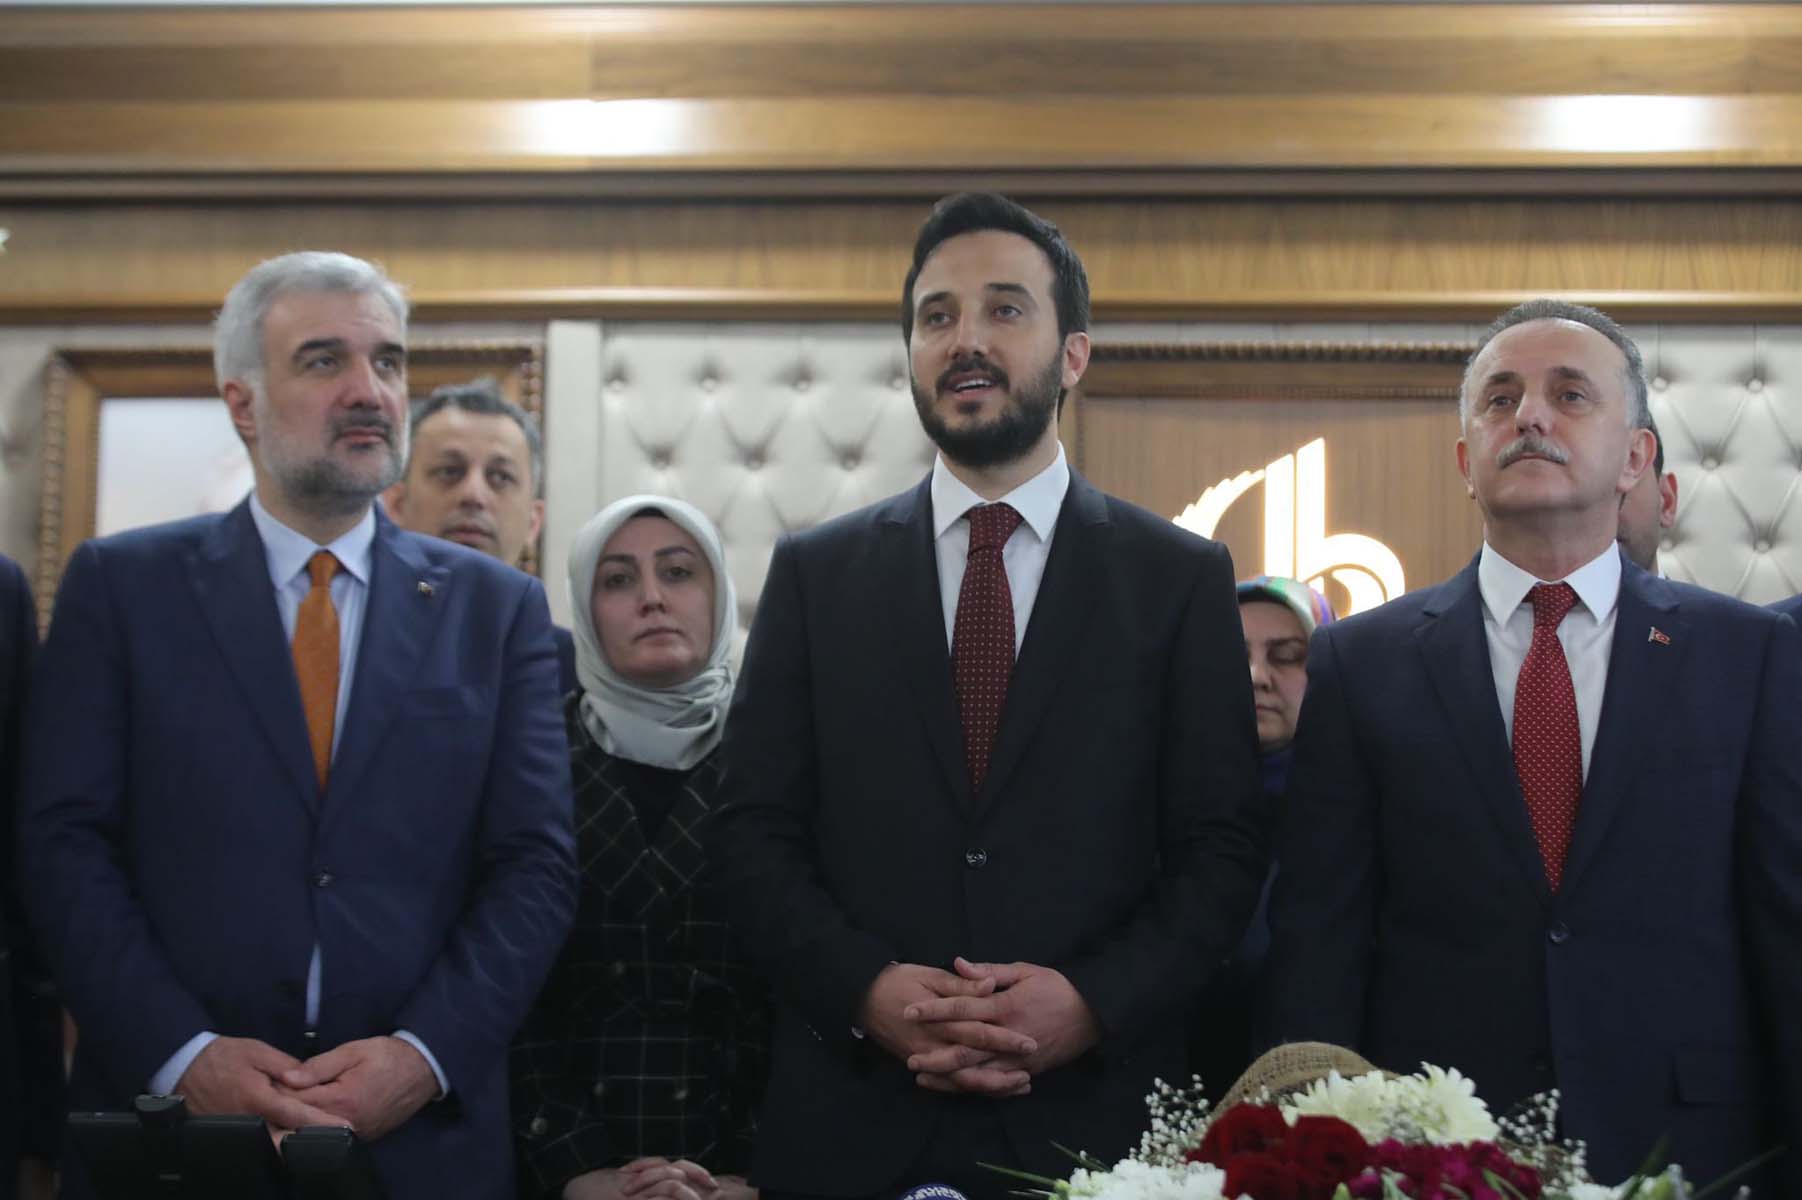 Bağcılar Belediyesi Başkanı Abdullah Özdemir kimdir? Kaç yaşında, nereli? Hangi partiden? Abdullah Özdemir siyasi hayatı ve biyografisi 